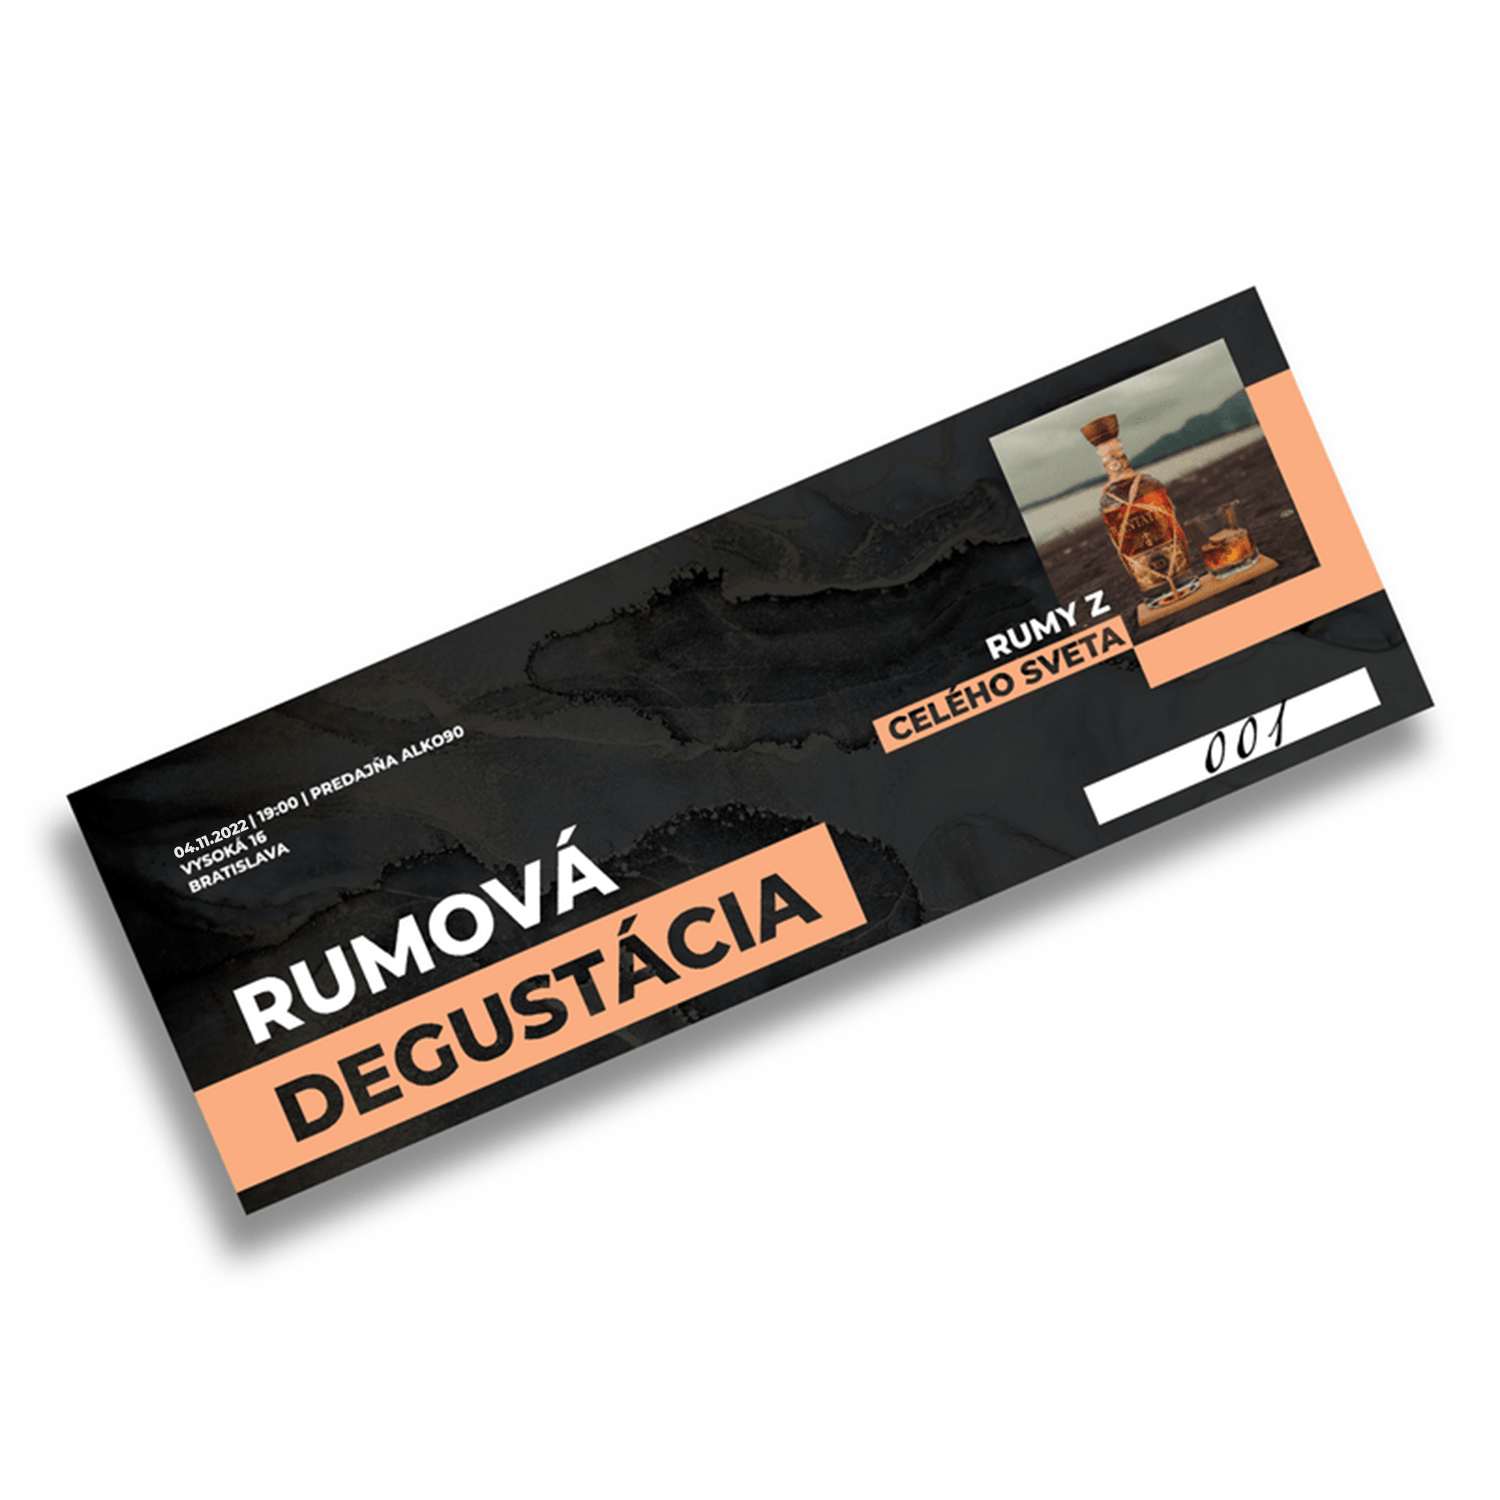 VSTUPENKA: Rumová degustácia Bratislava vol.1